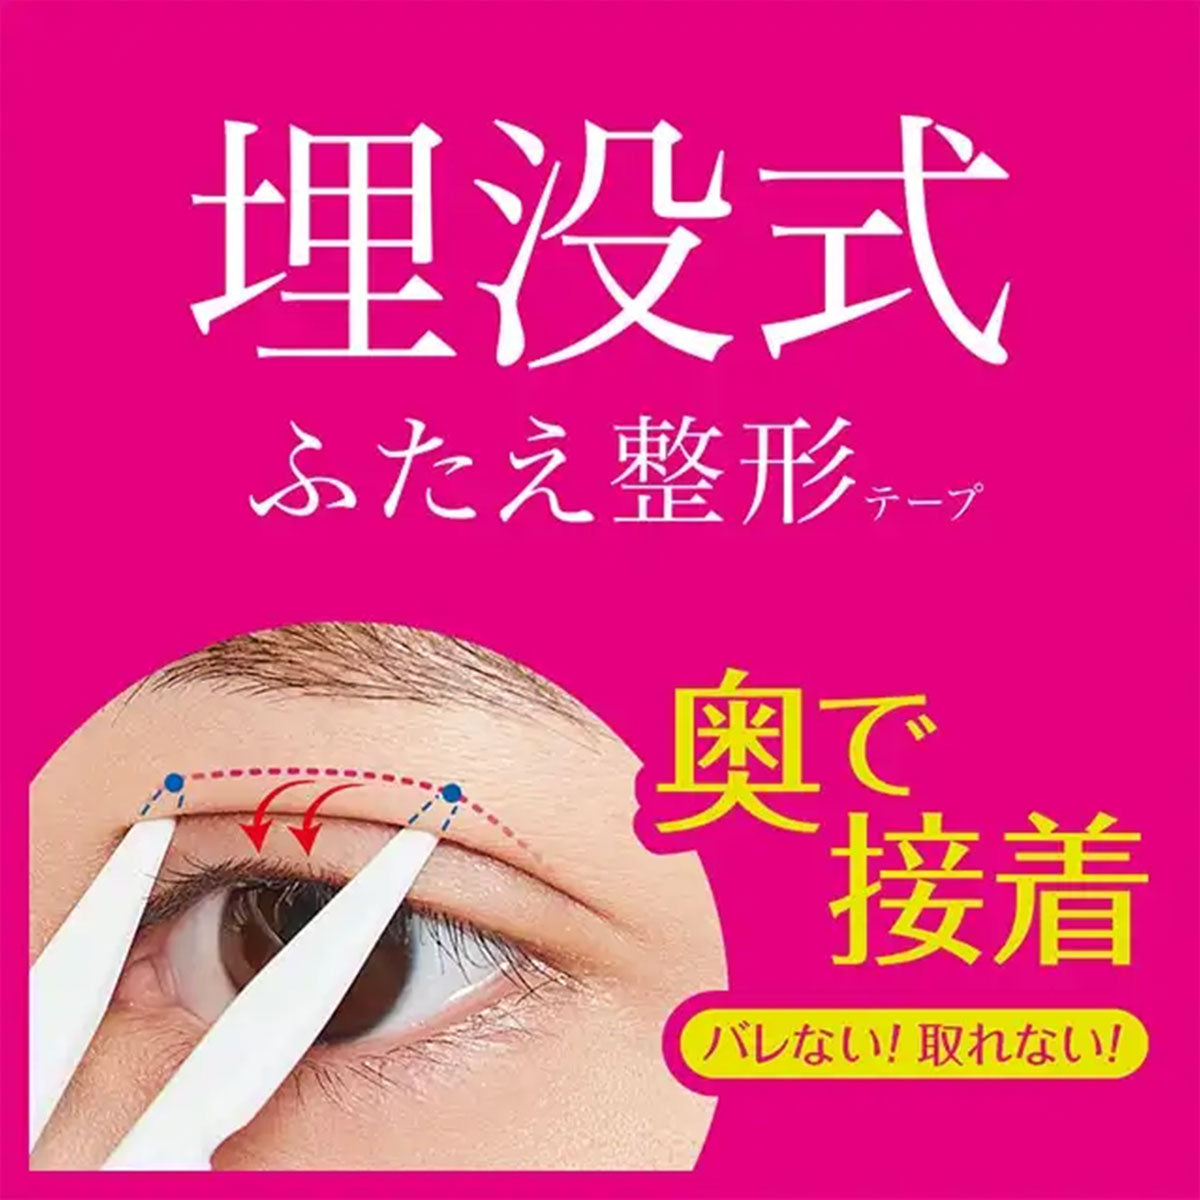 日本D-UP双眼皮贴温和型 120片